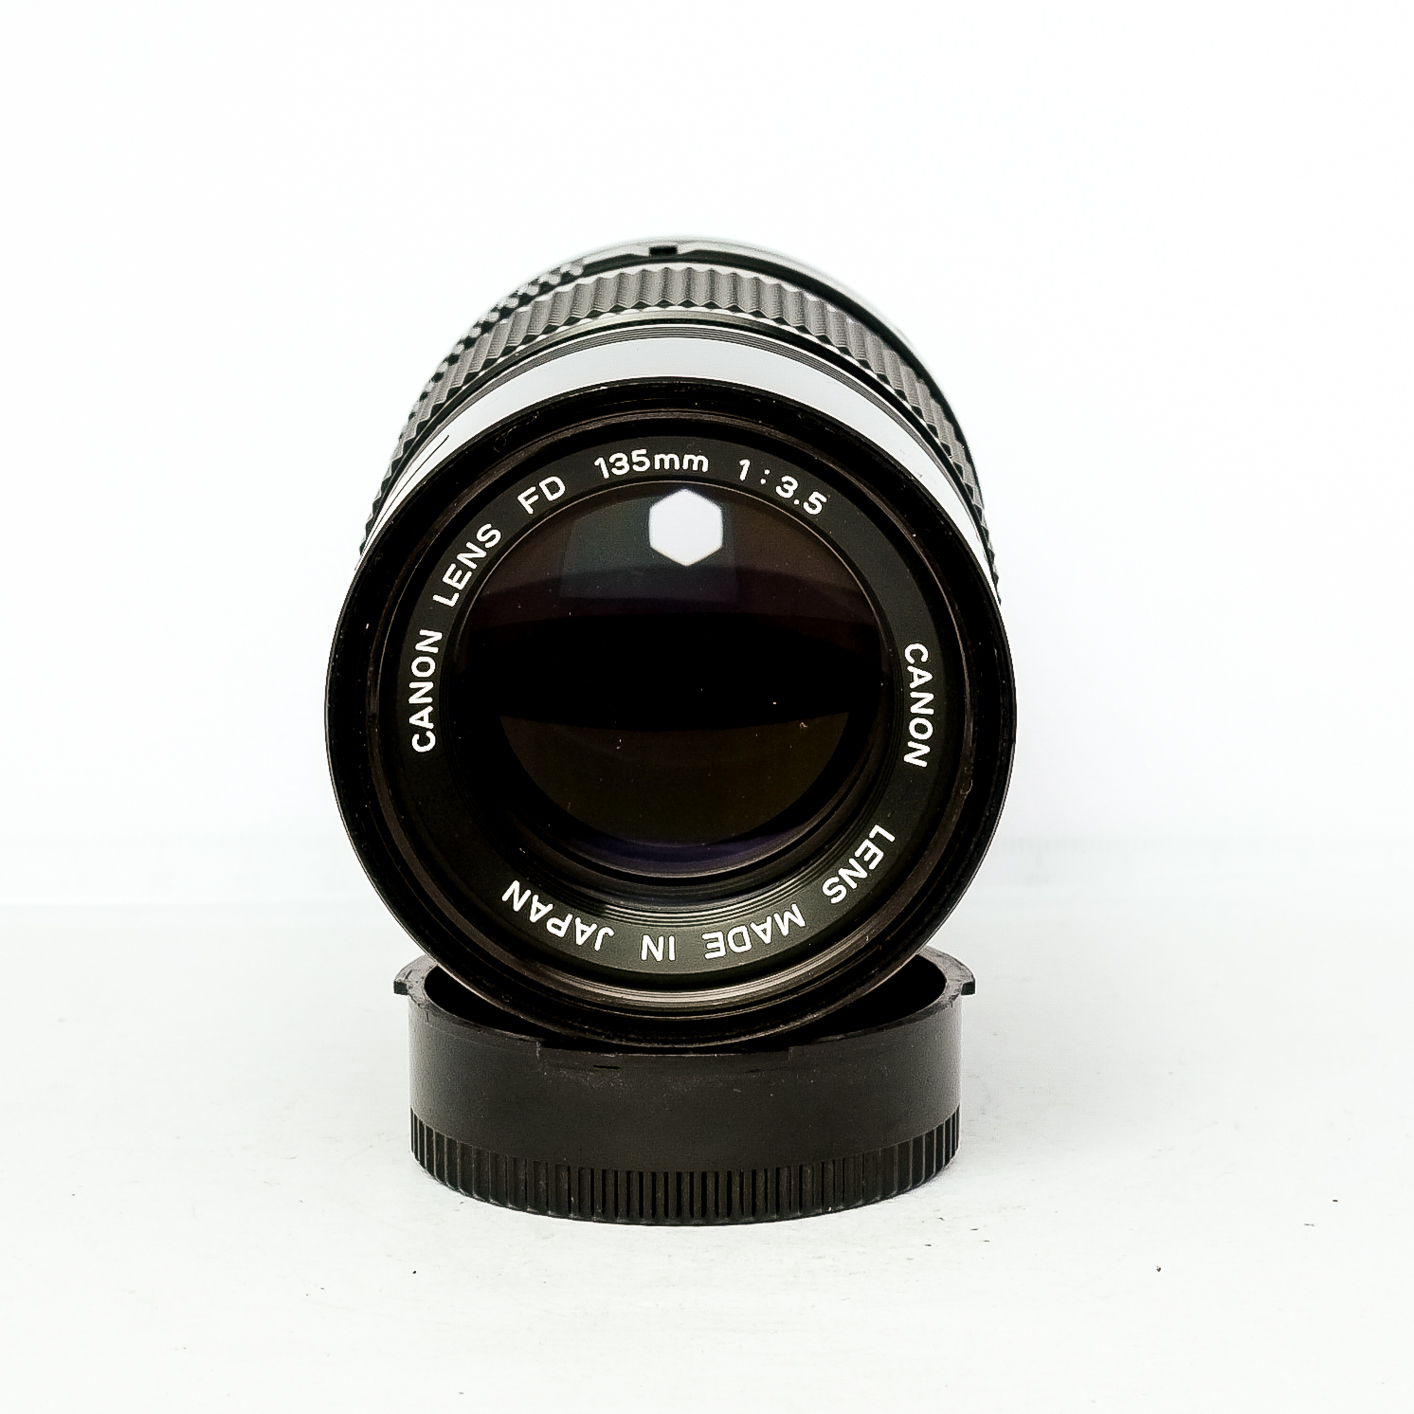 Canon FD 135mm f3.5 - The Classic Camera